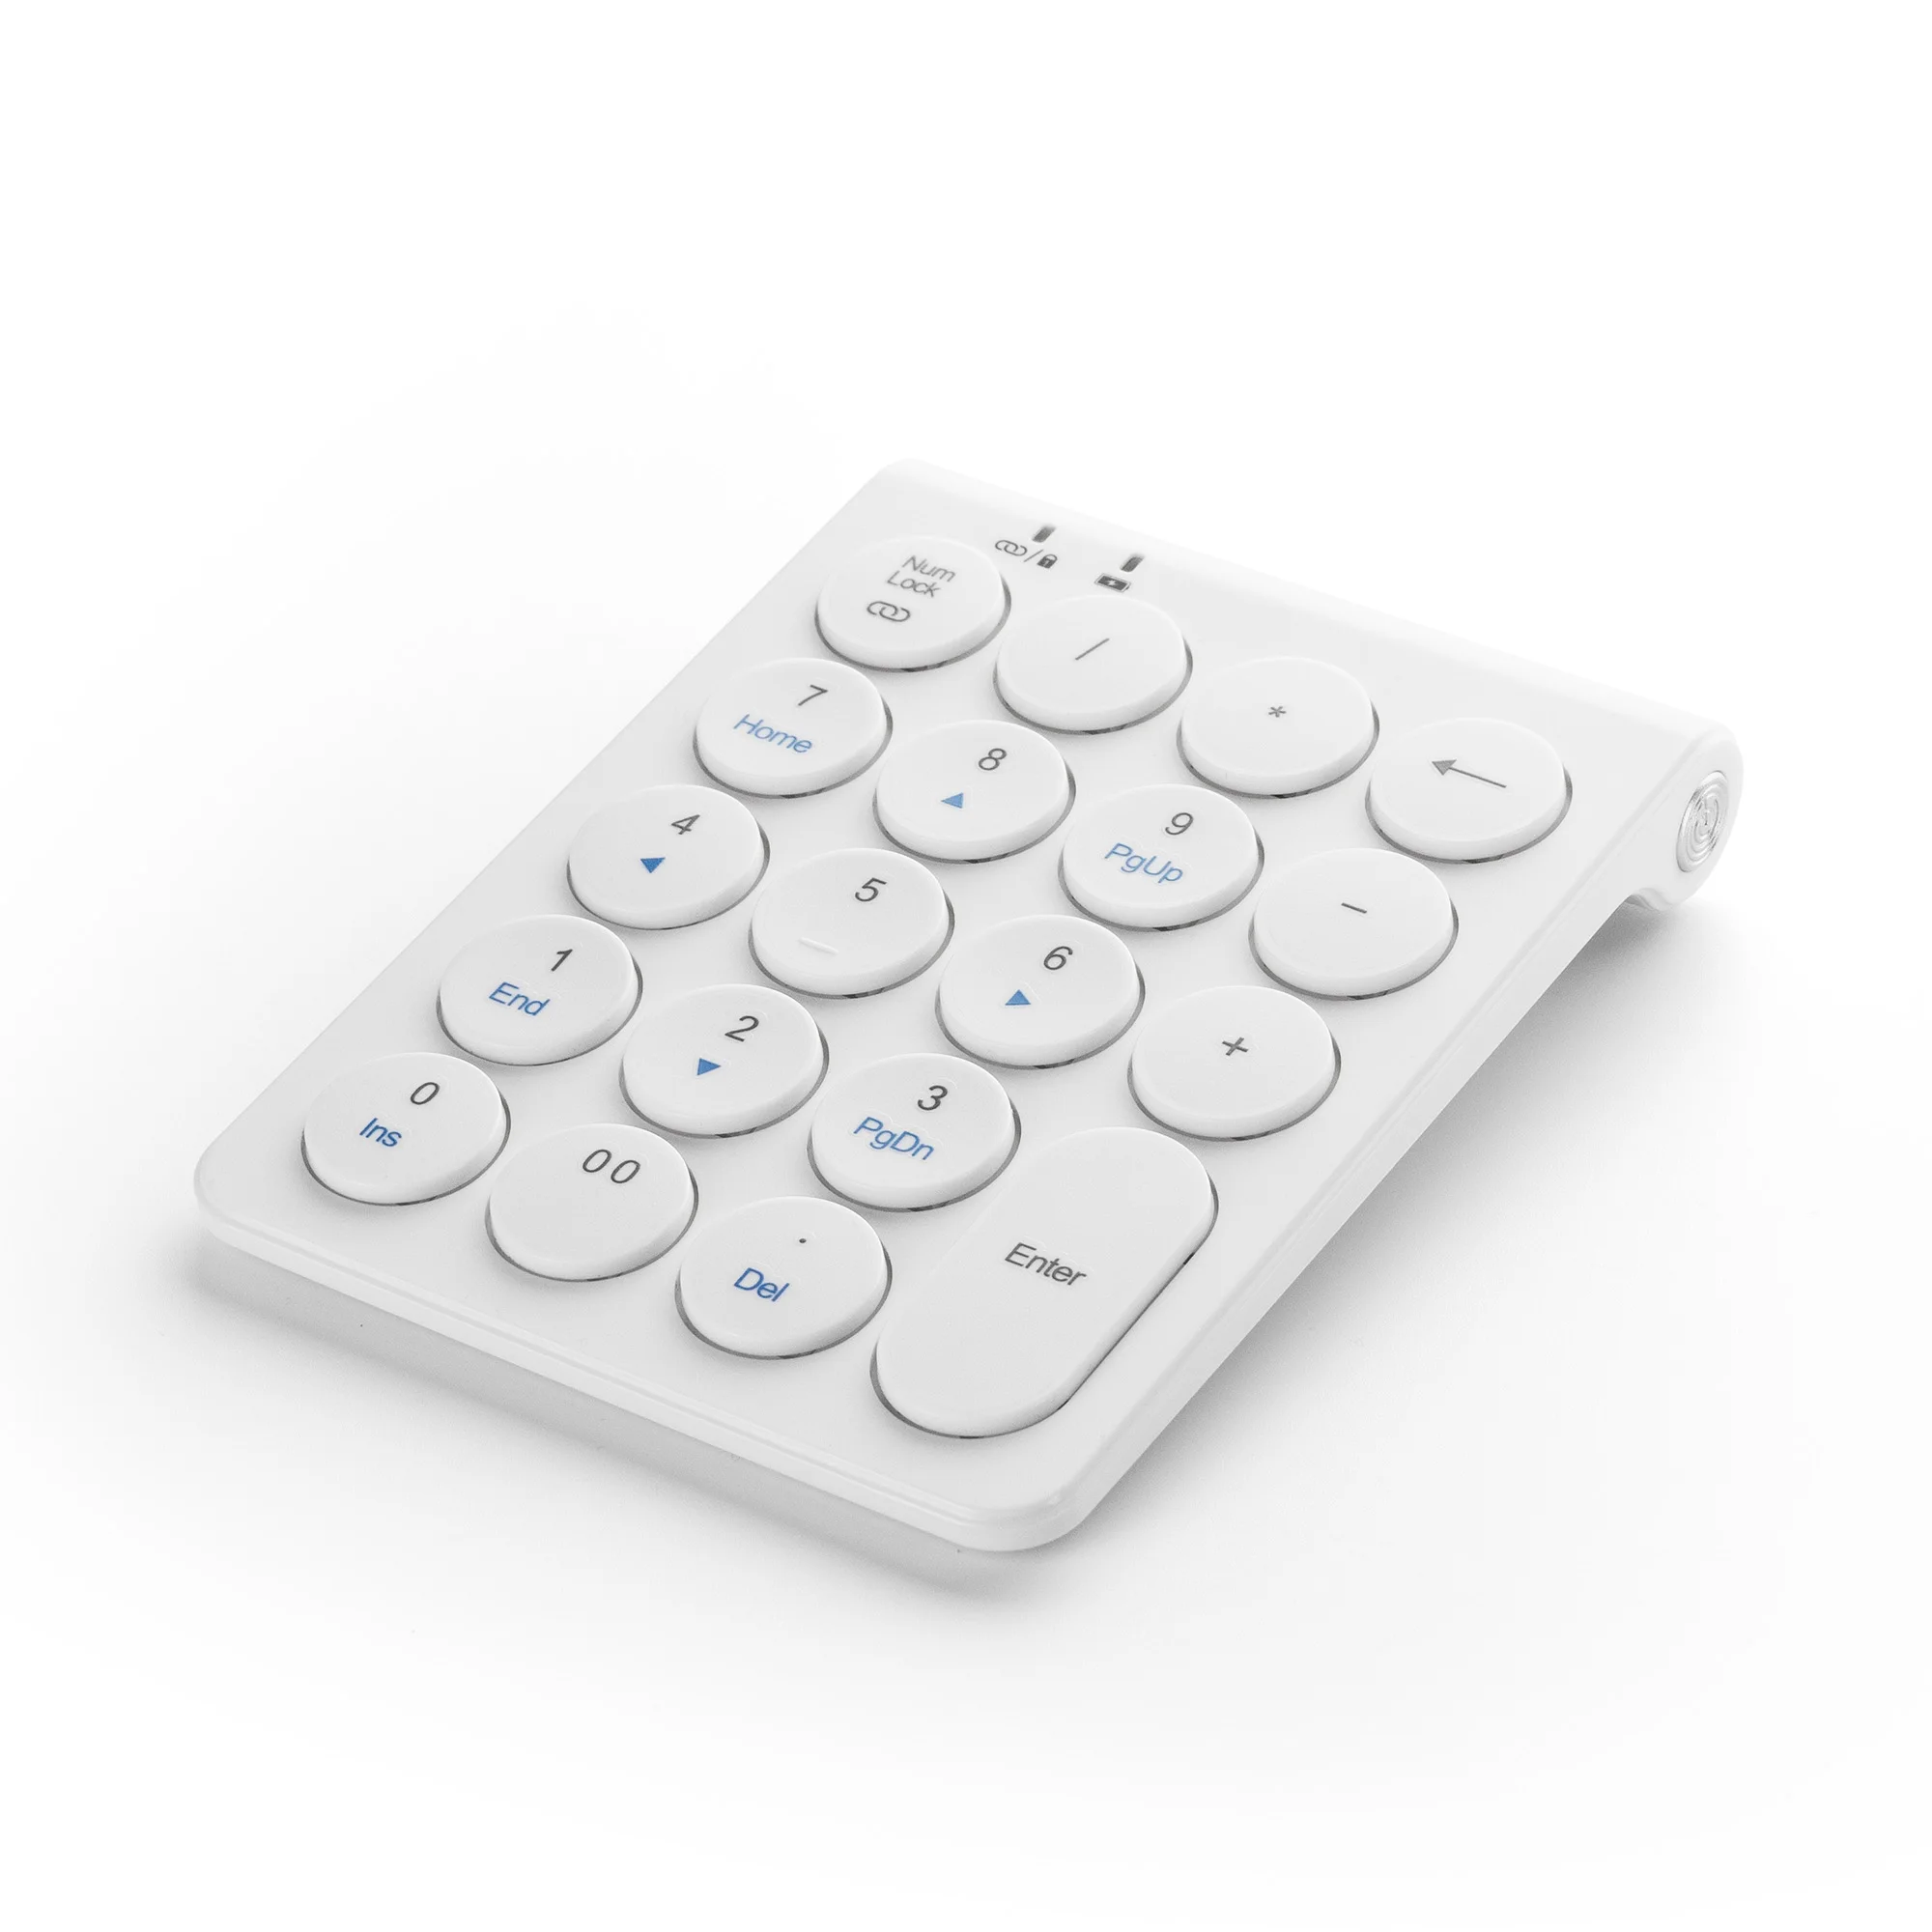 19 клавиш Bluetooth беспроводная цифровая клавиатура Мини Numpad с большим количеством функциональных клавиш цифровая клавиатура для ПК